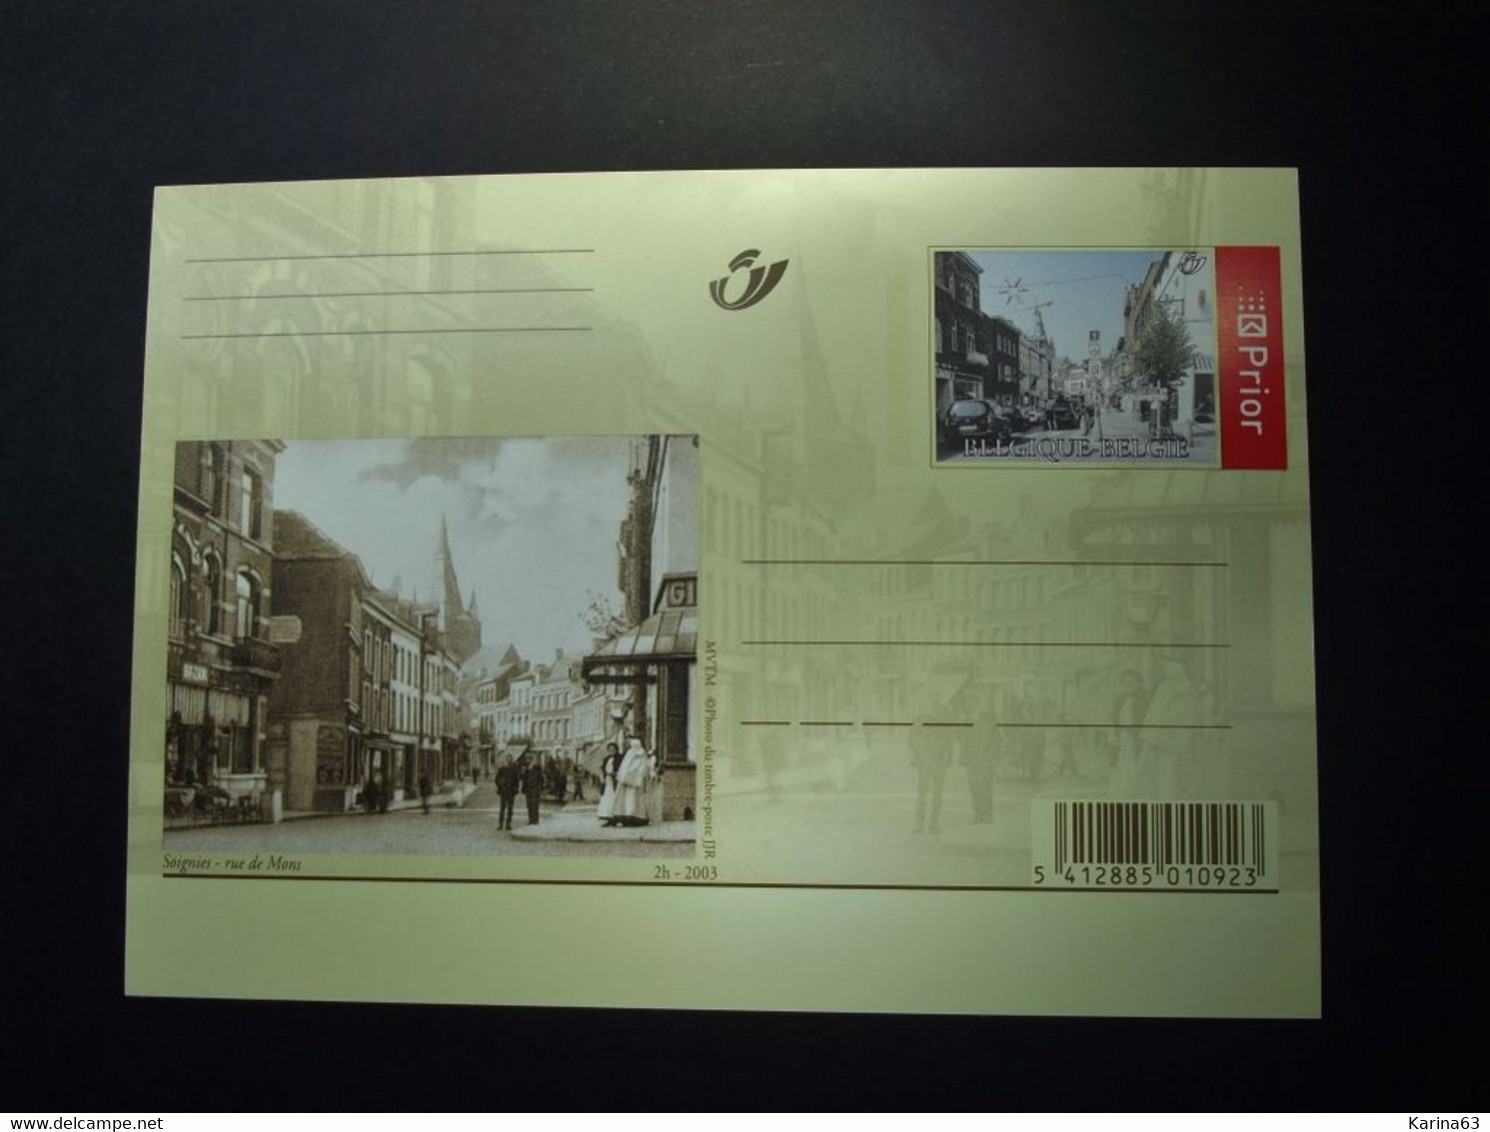 BELGIE - BELGIQUE  - 2003 -10 Briefkaarten 108/117 : VROEGER en NU - volledige reeks  - Mint condition**